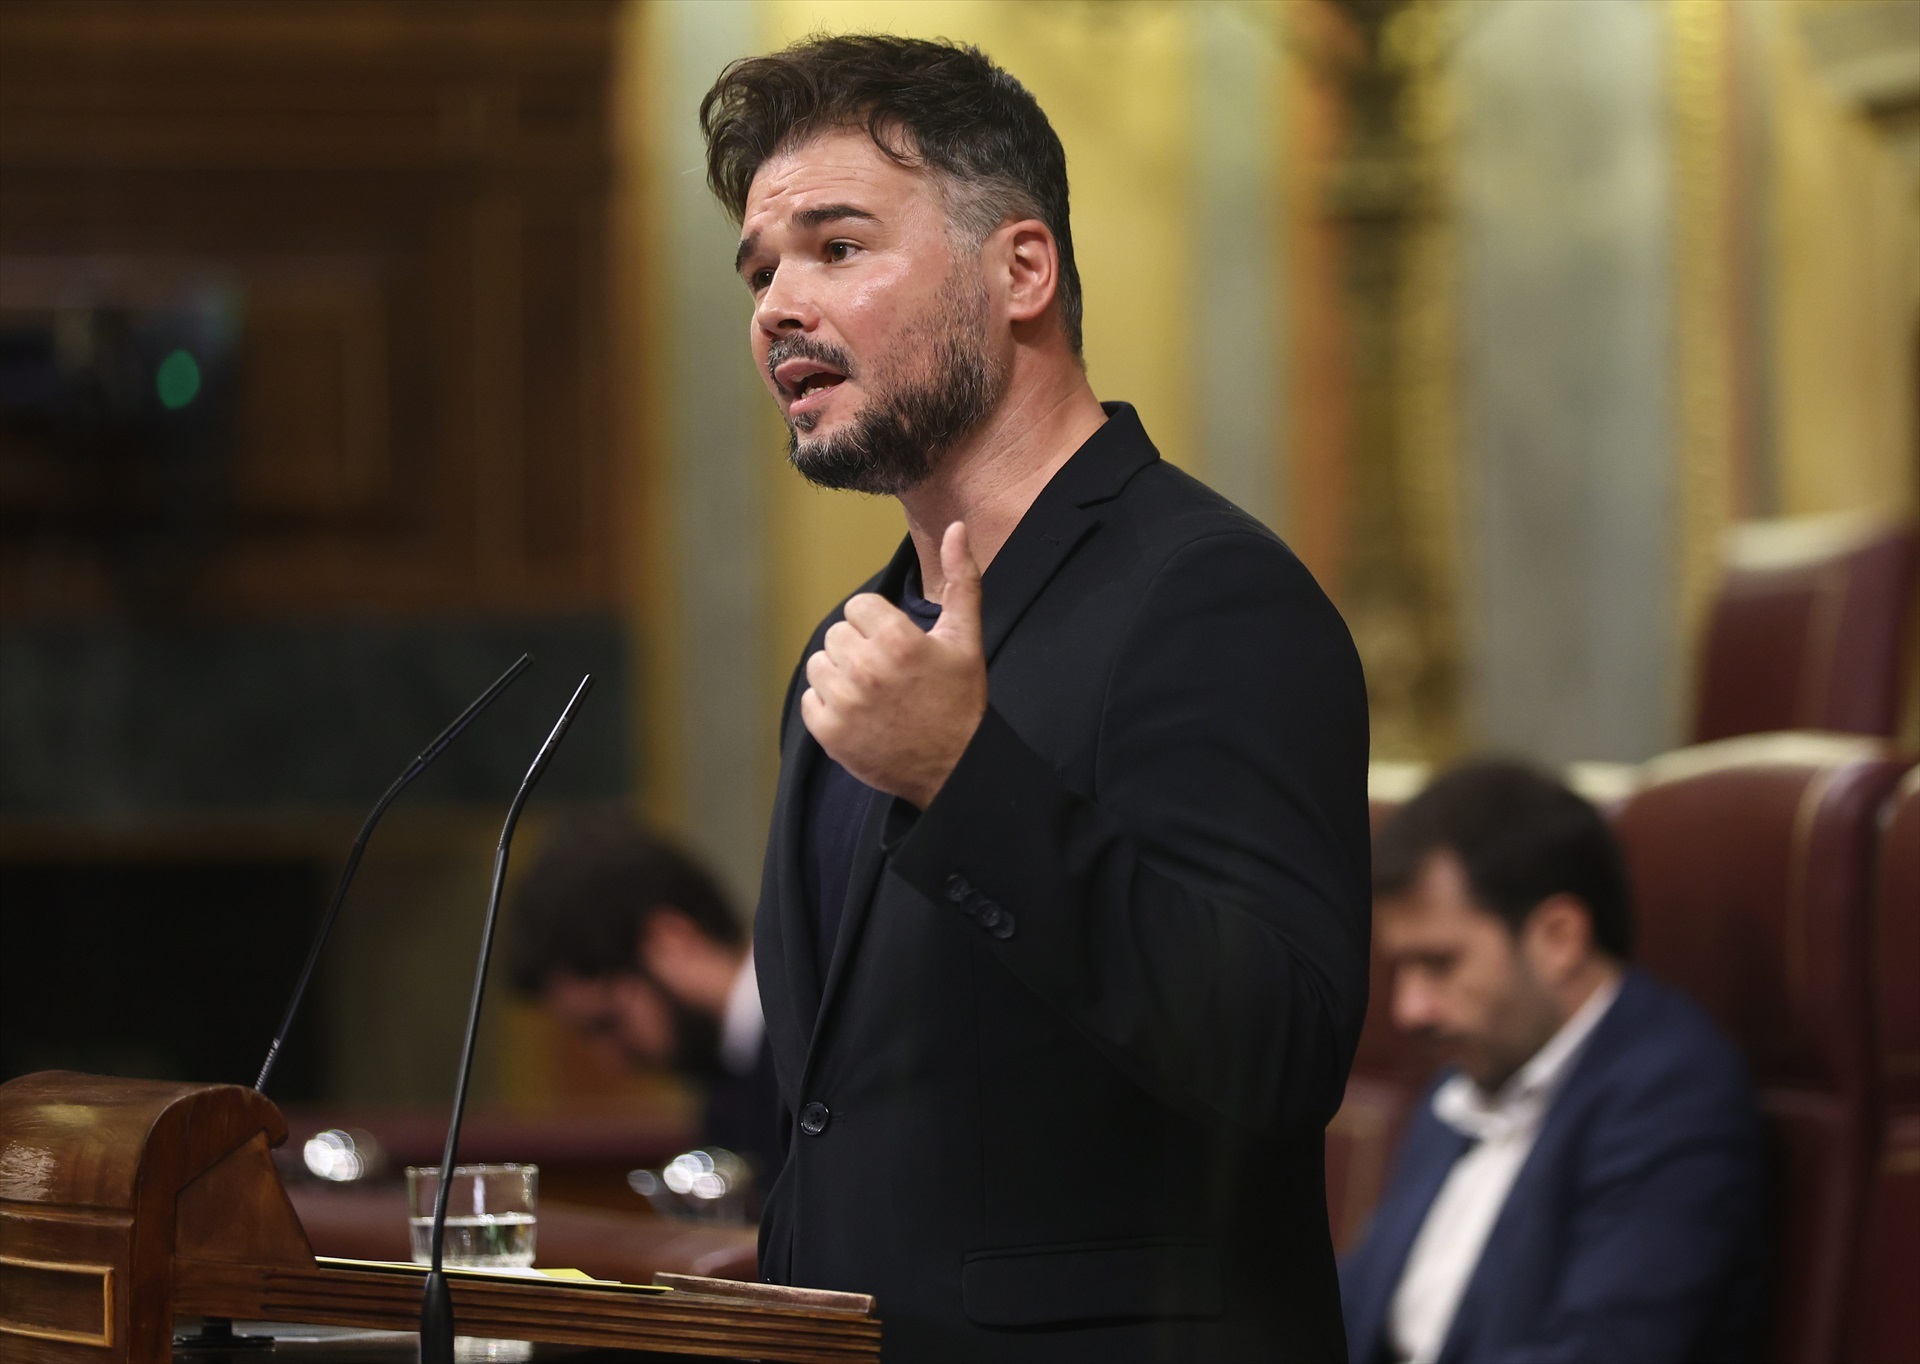 El portaveu parlamentari d'ERC al Congrés, Gabriel Rufián, intervé durant una sessió plenària al Congrés dels Diputats, el 13 d'octubre del 2022, a Madrid (Espanya). -Eduardo Parra / Europa Press